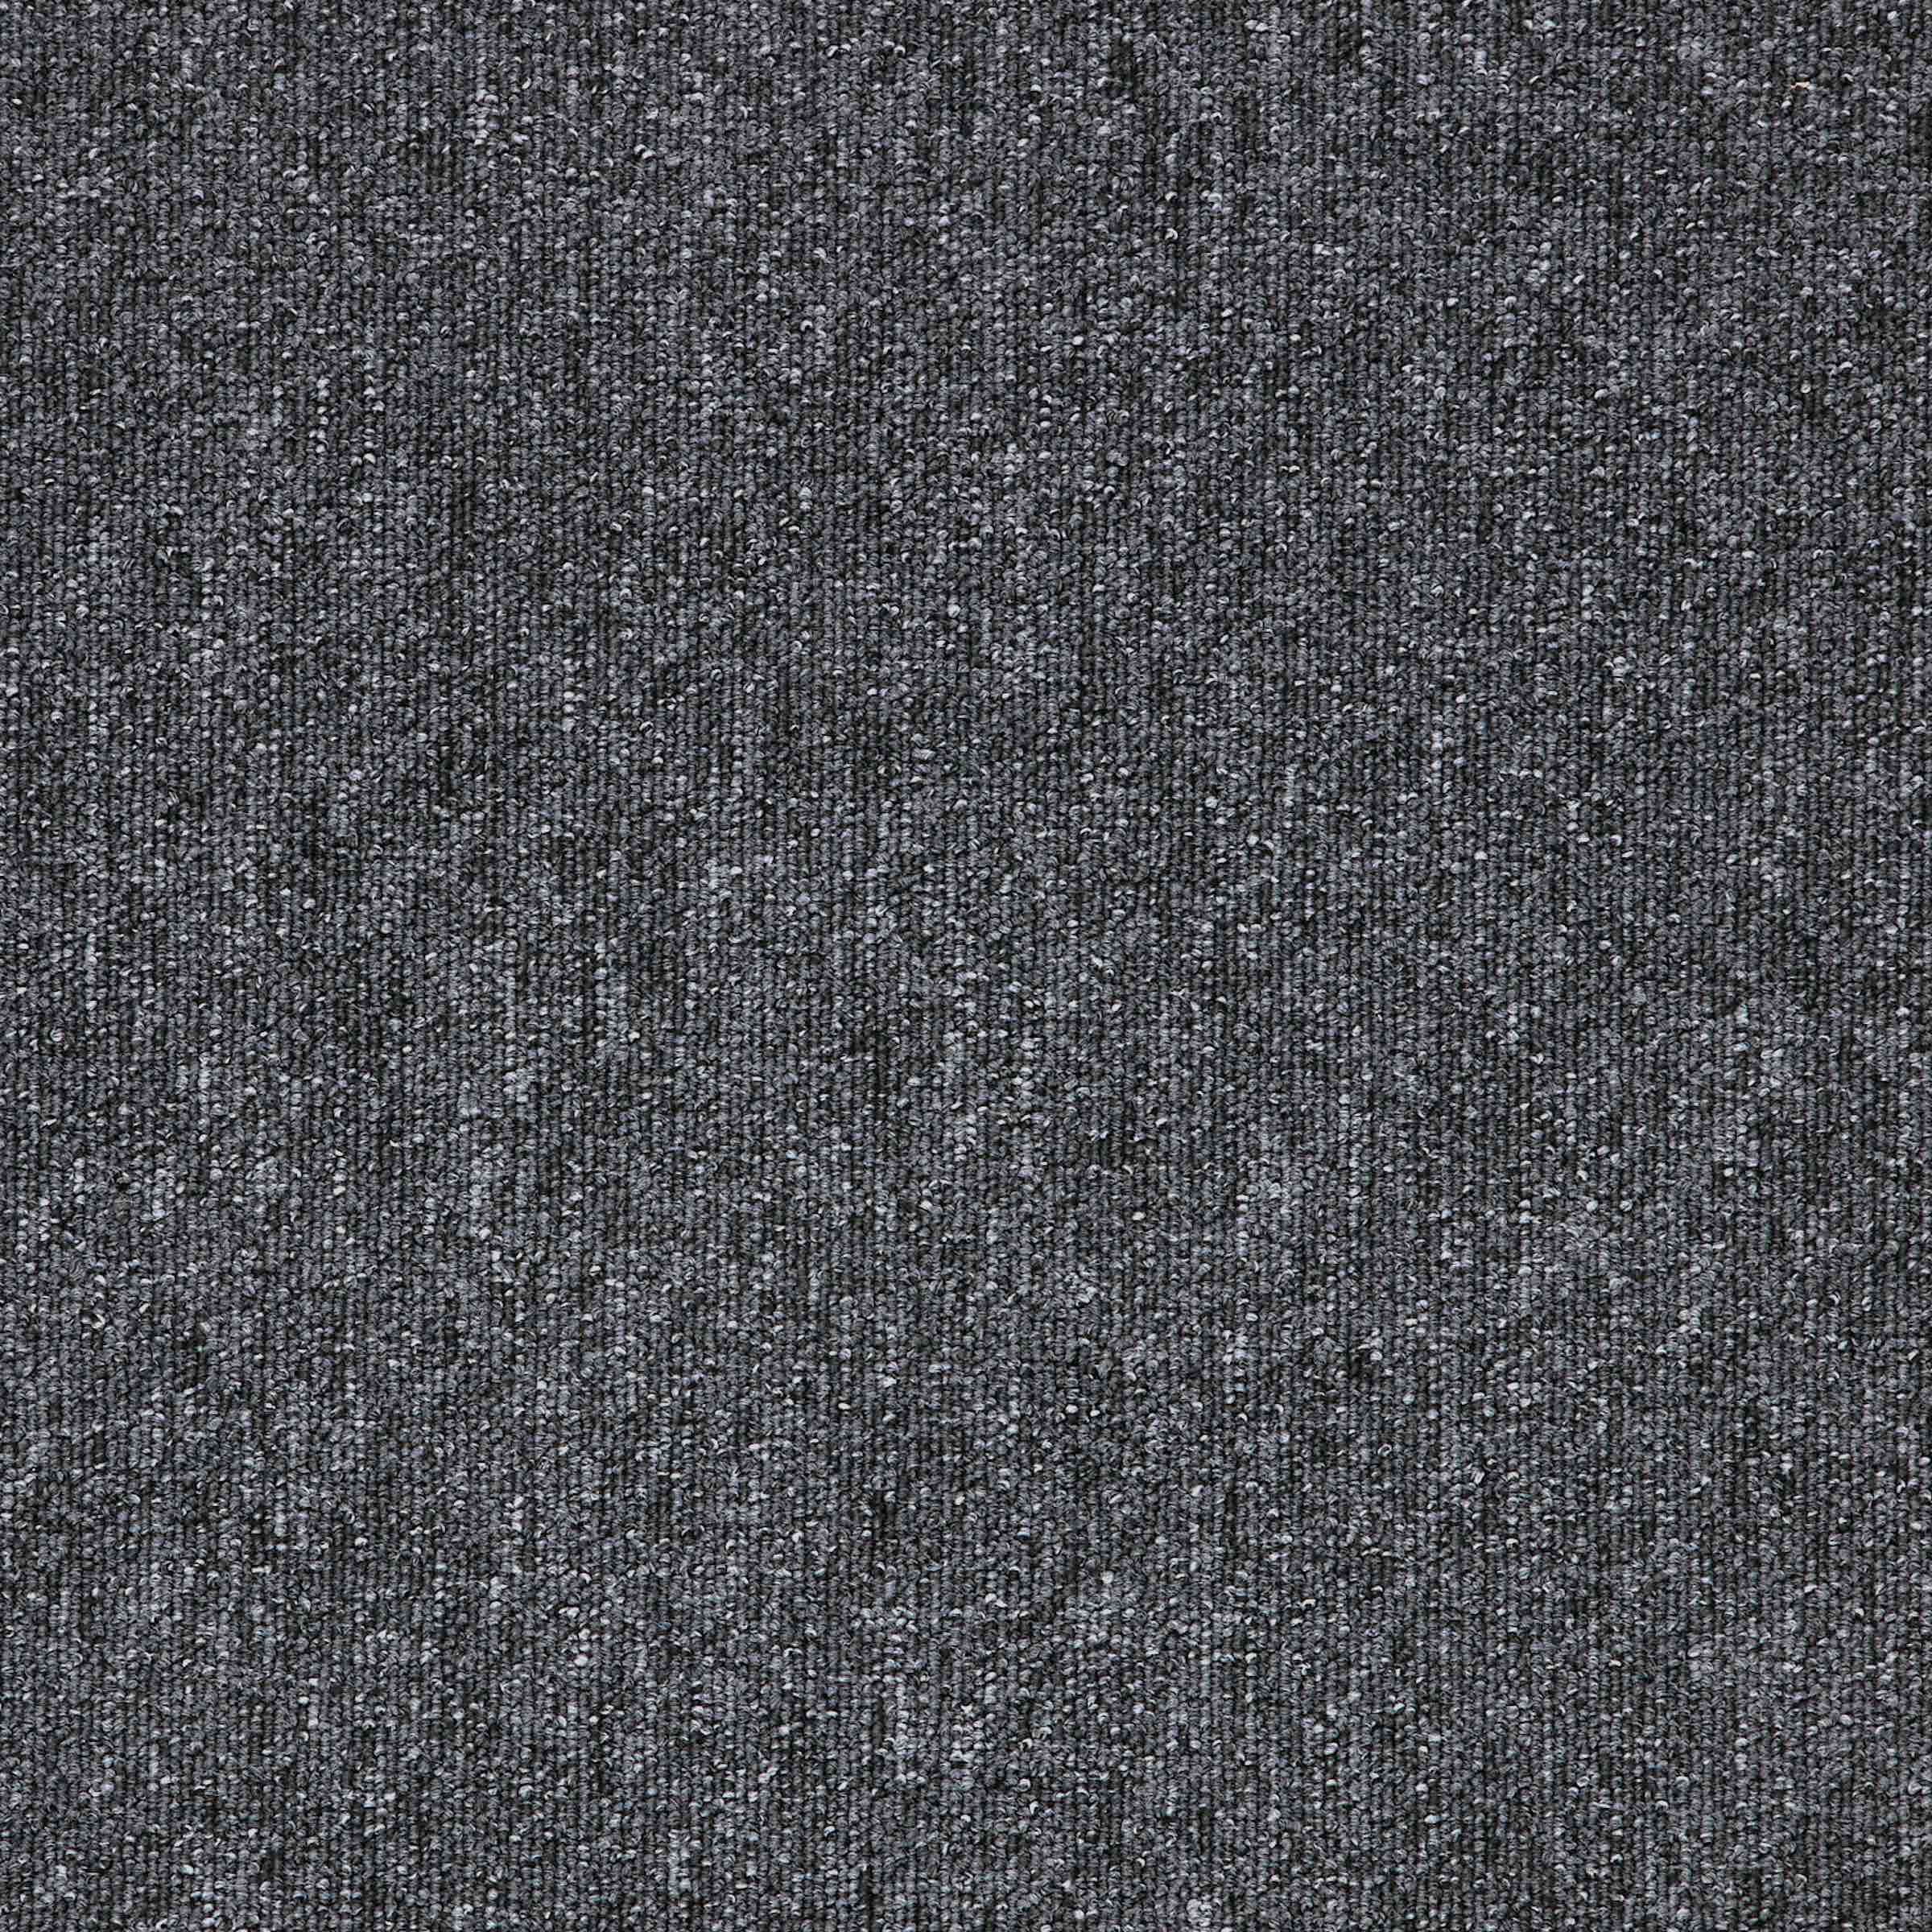 Macaw | Quartz | Paragon Carpet Tiles | Commercial Carpet Tiles